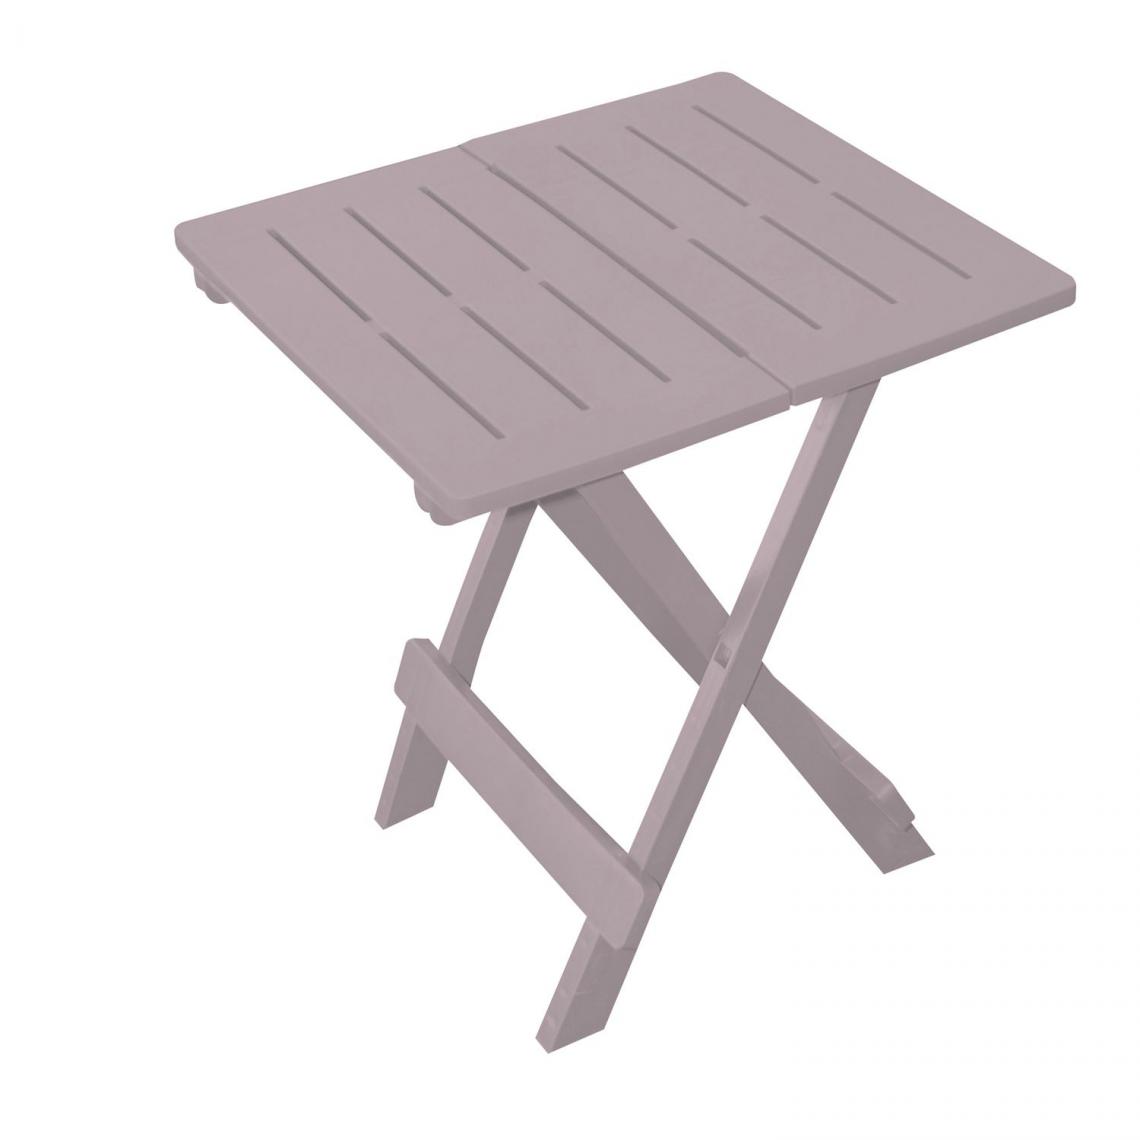 Sunnydays - Table d'appoint pliante modèle Adige - 44 x 44 x 50 cm. - Taupe - Tables de jardin